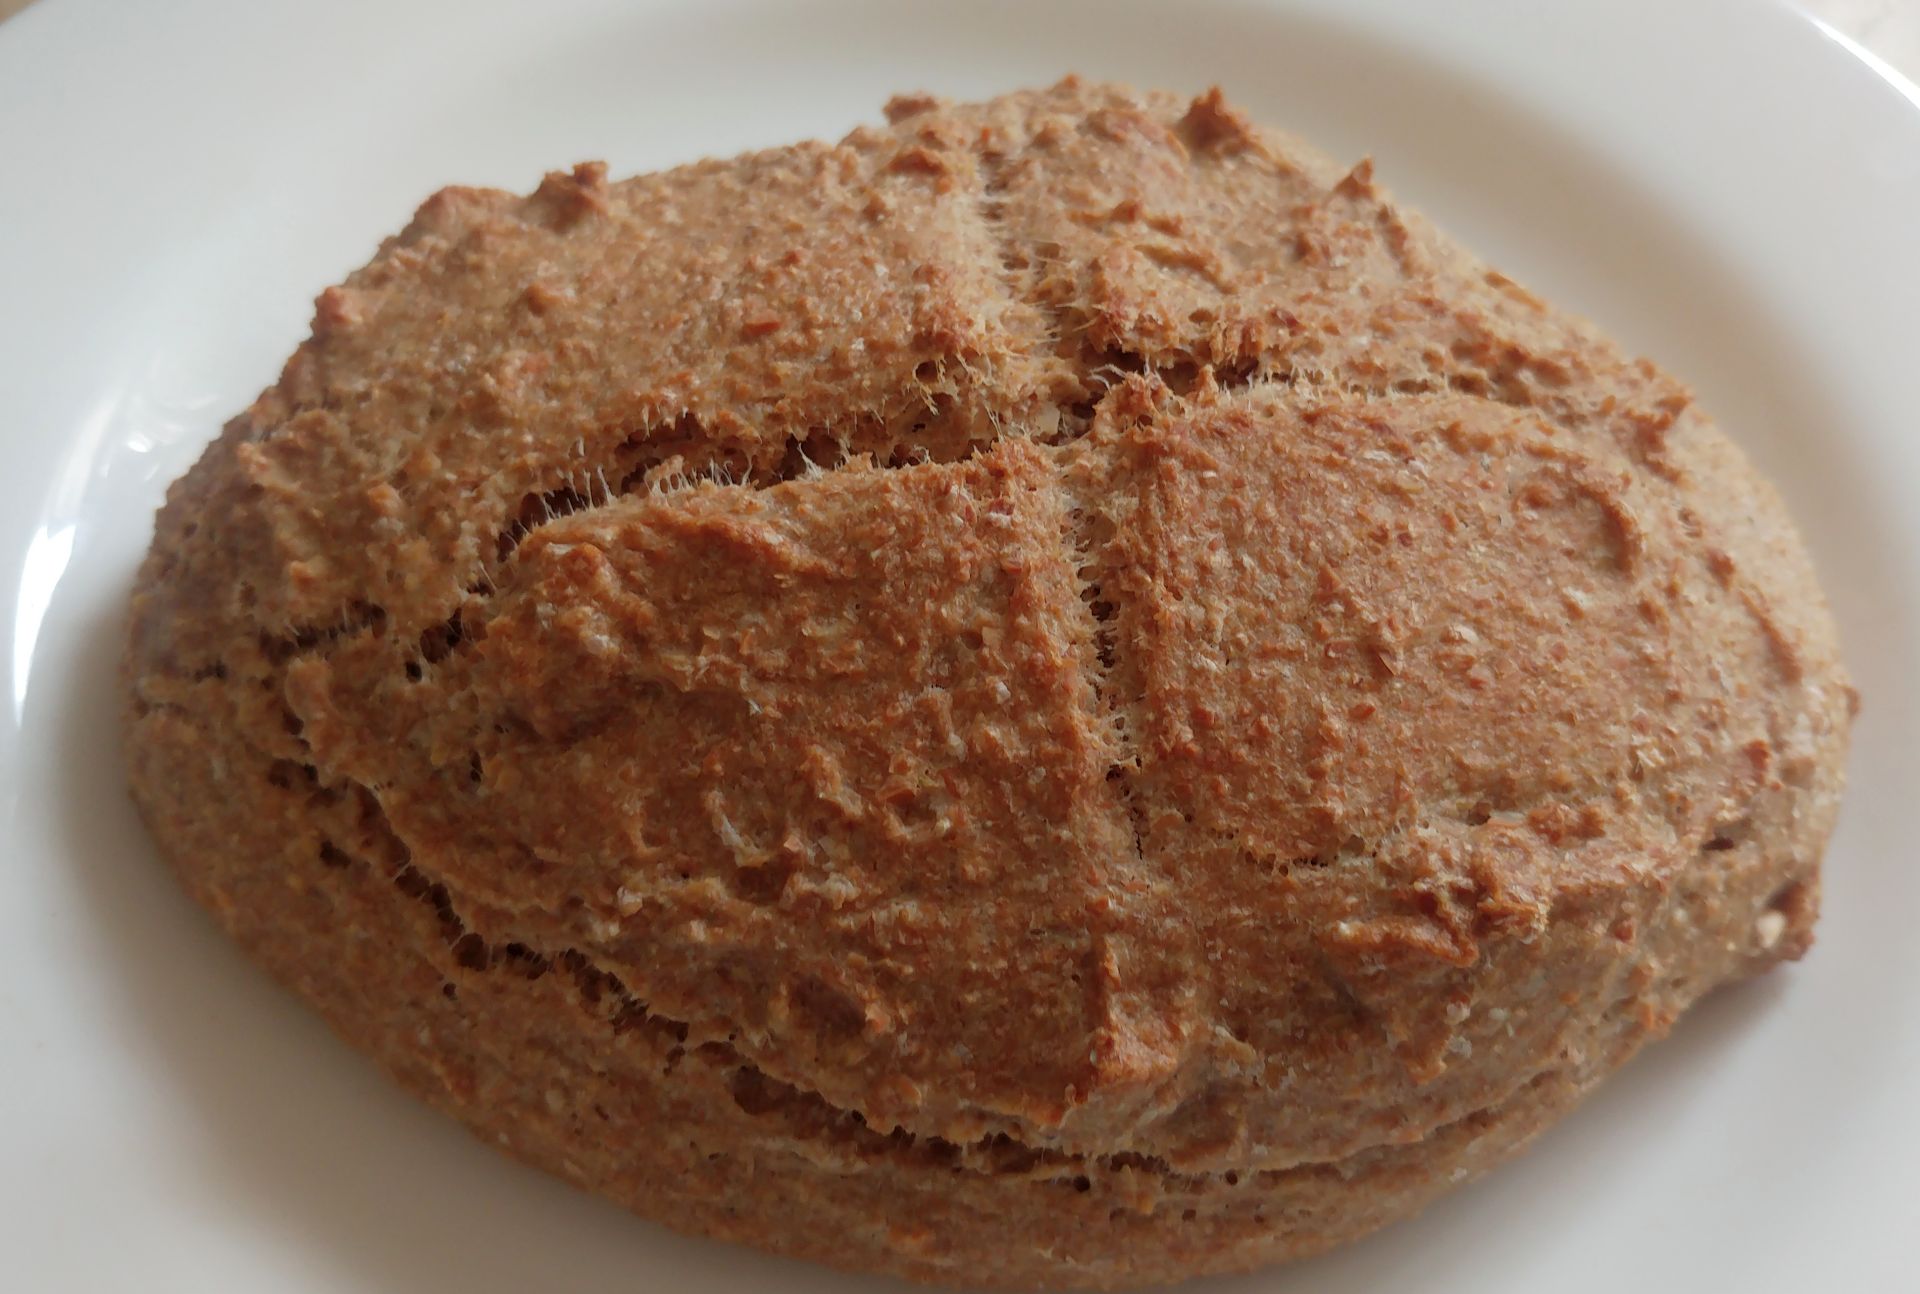 Pan de okara y harina integral